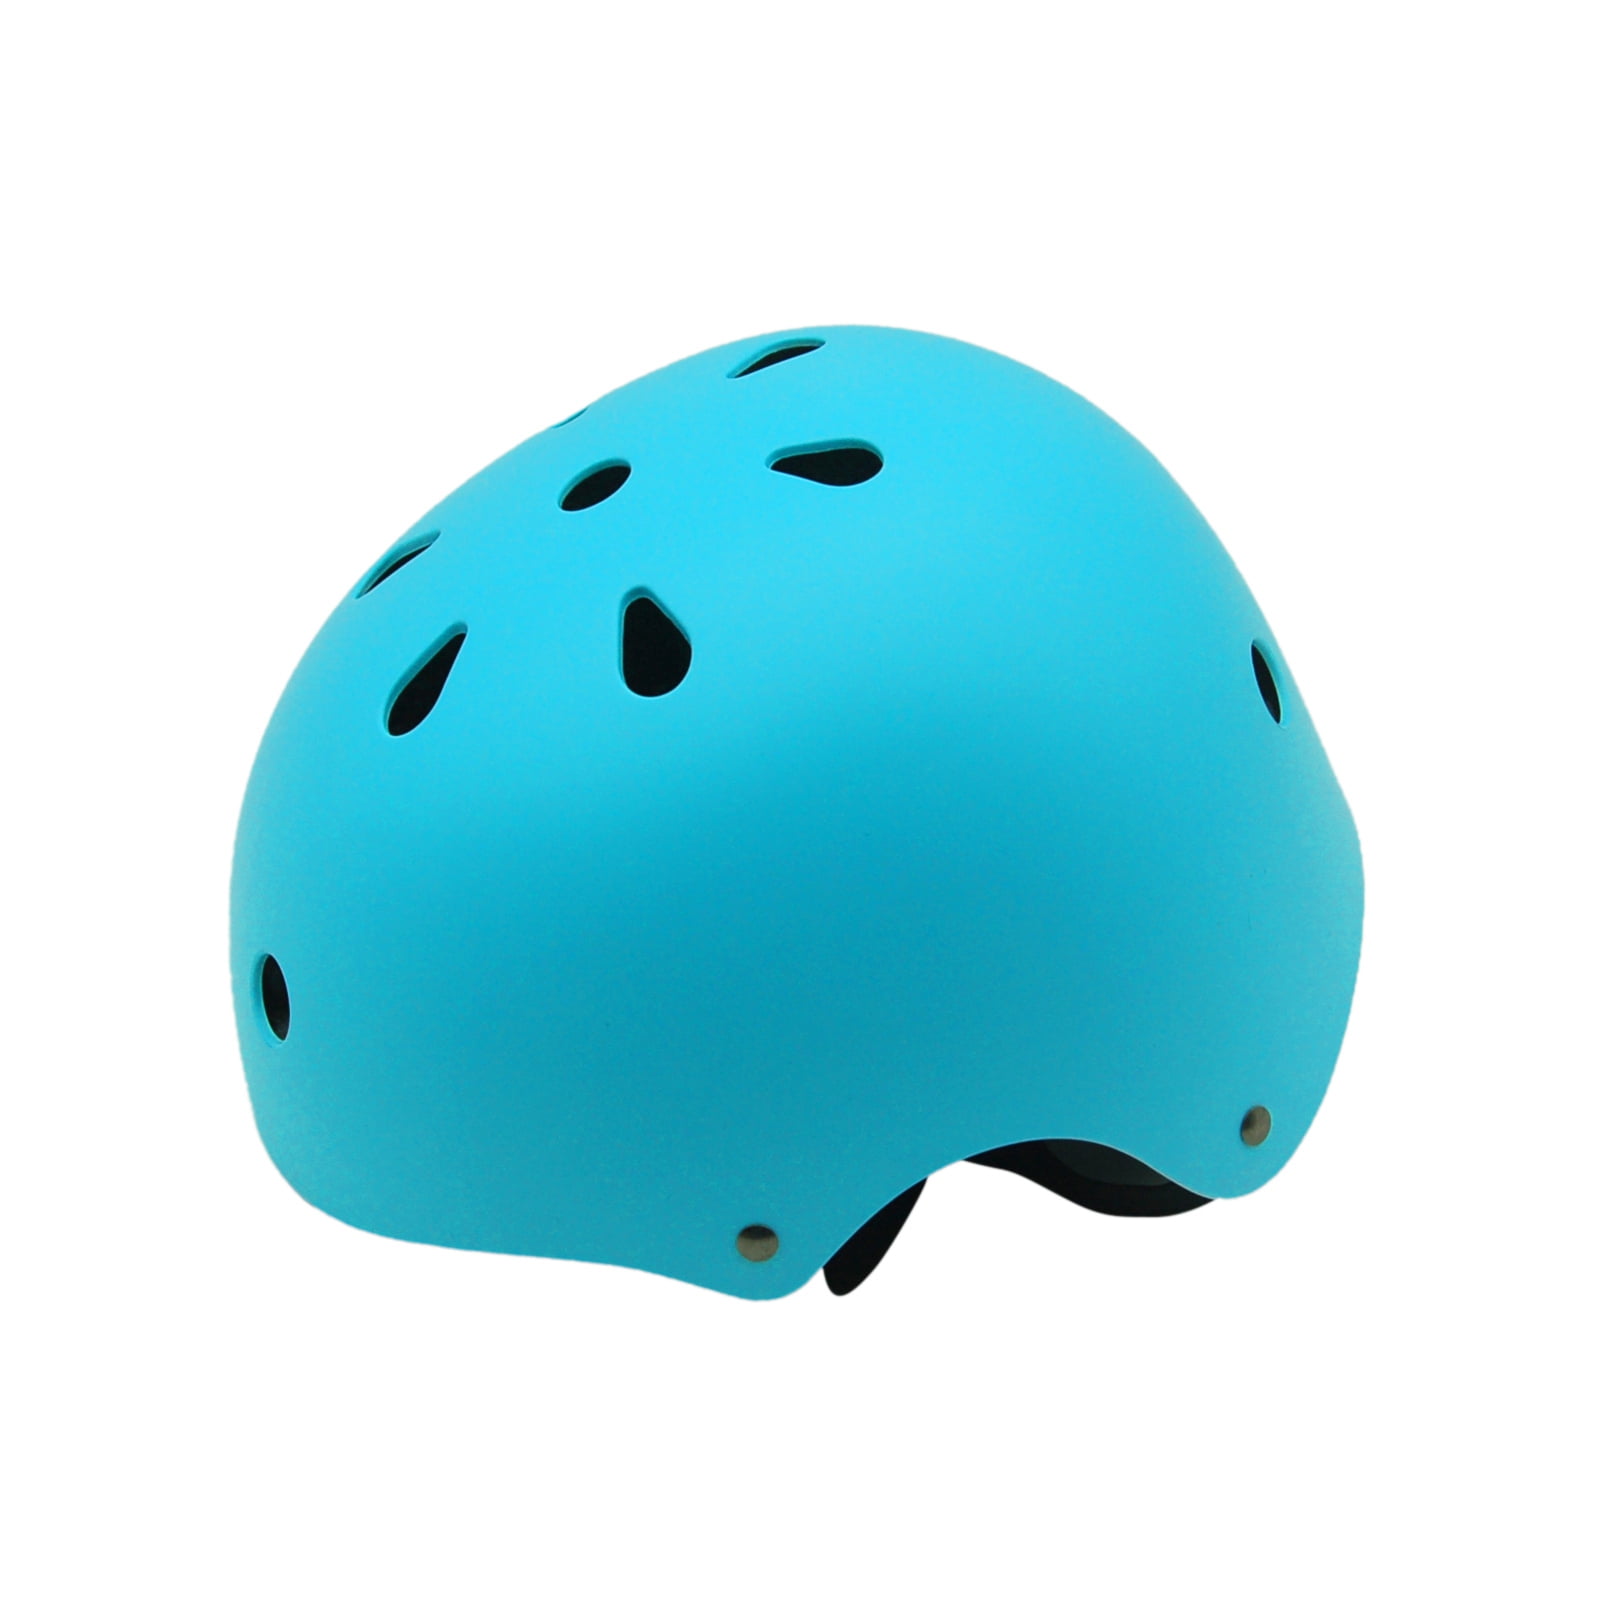 Scooter Roller Bicycle BMX Cycling Skateboard Child Helmet 48-57cm ONT Kids Bike Helmet Adjustable Toddler Helmet for Multi-Sport